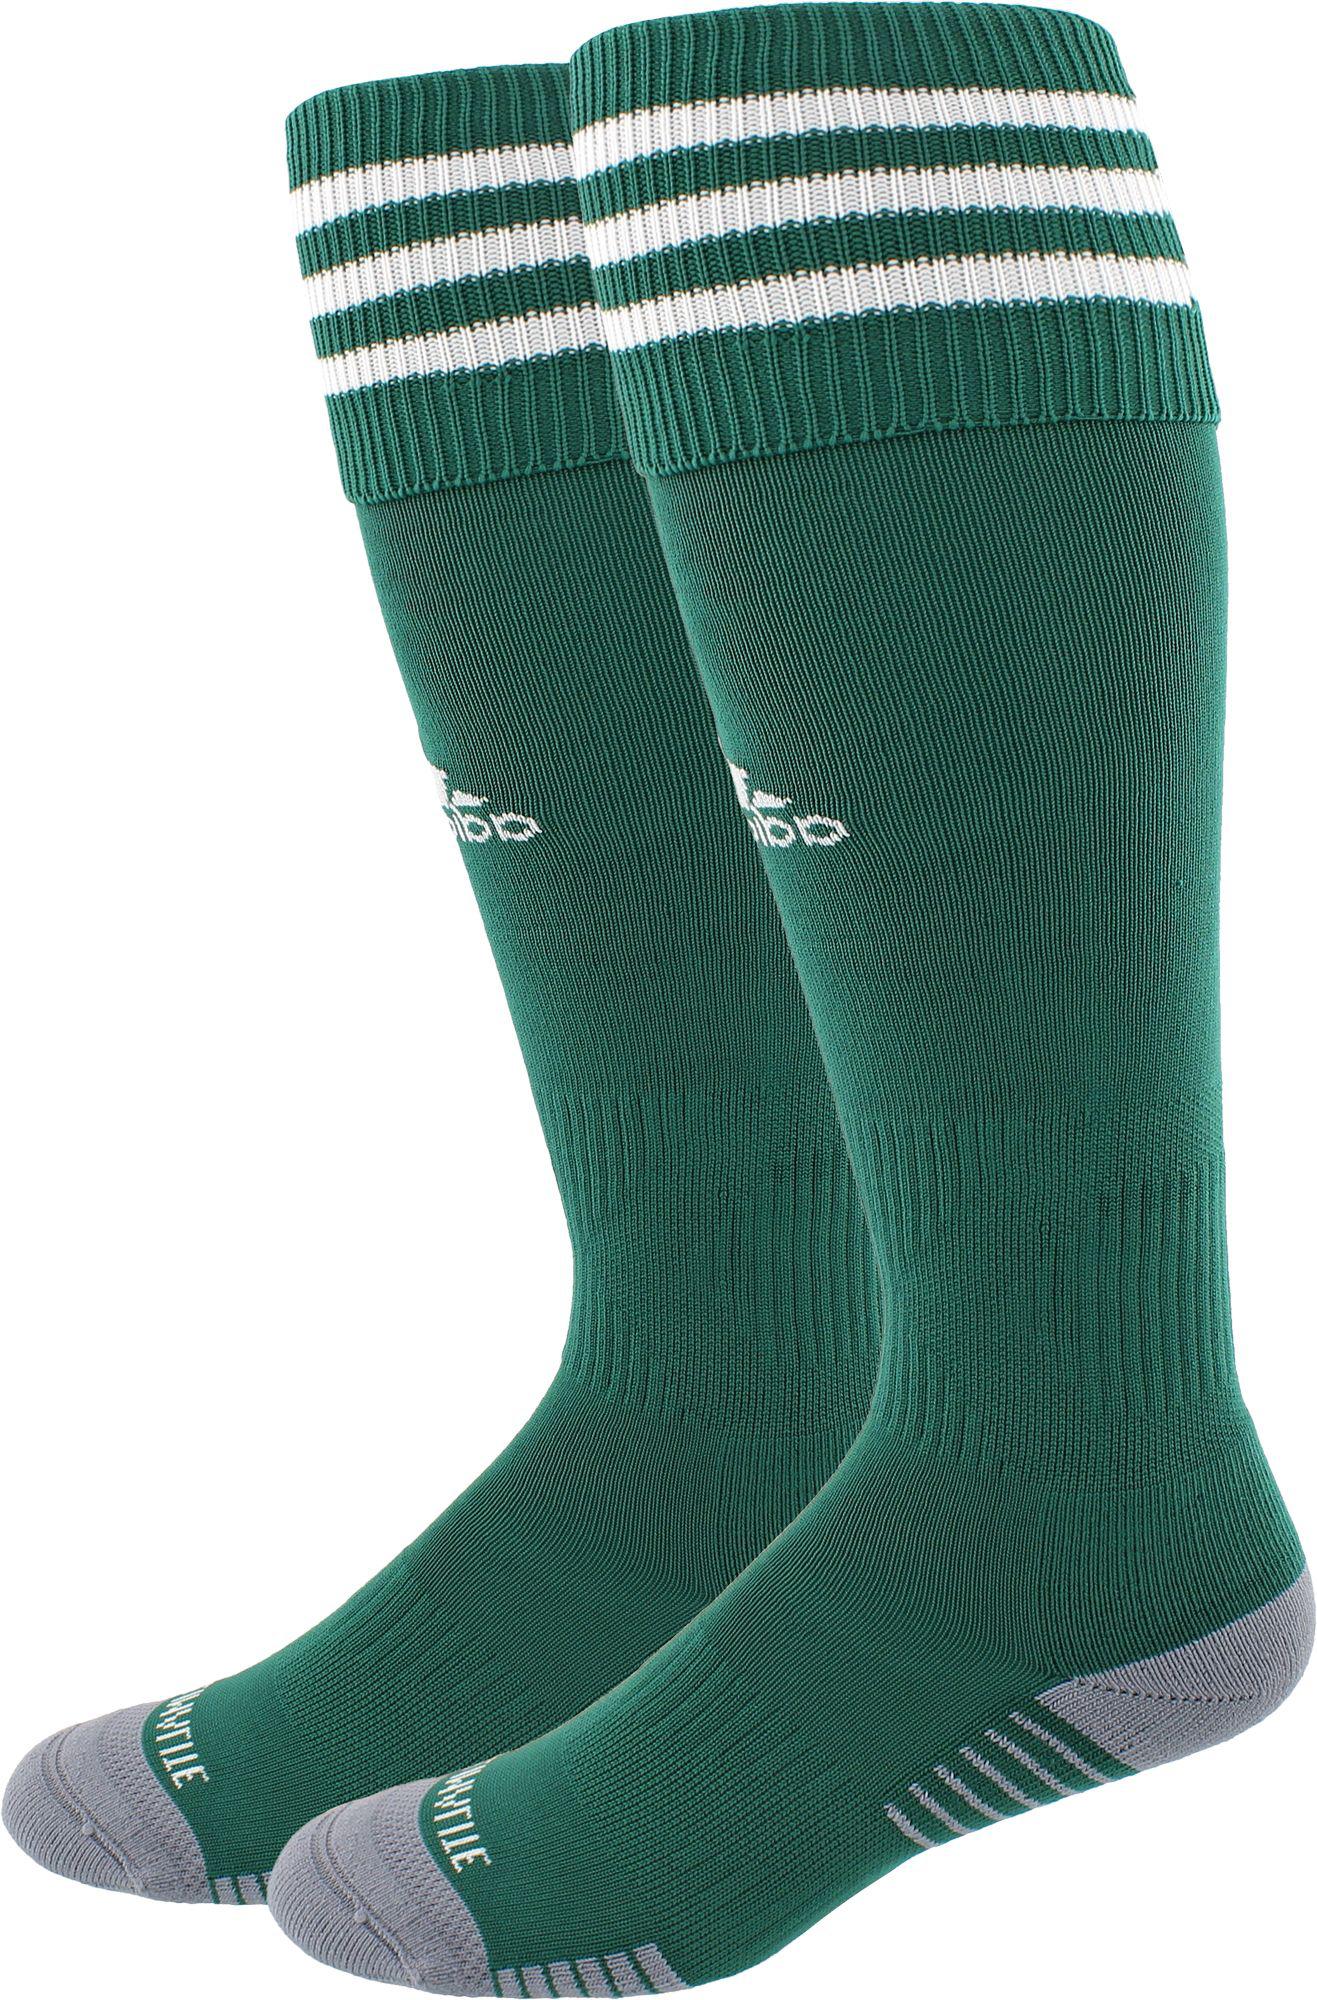 green adidas soccer socks